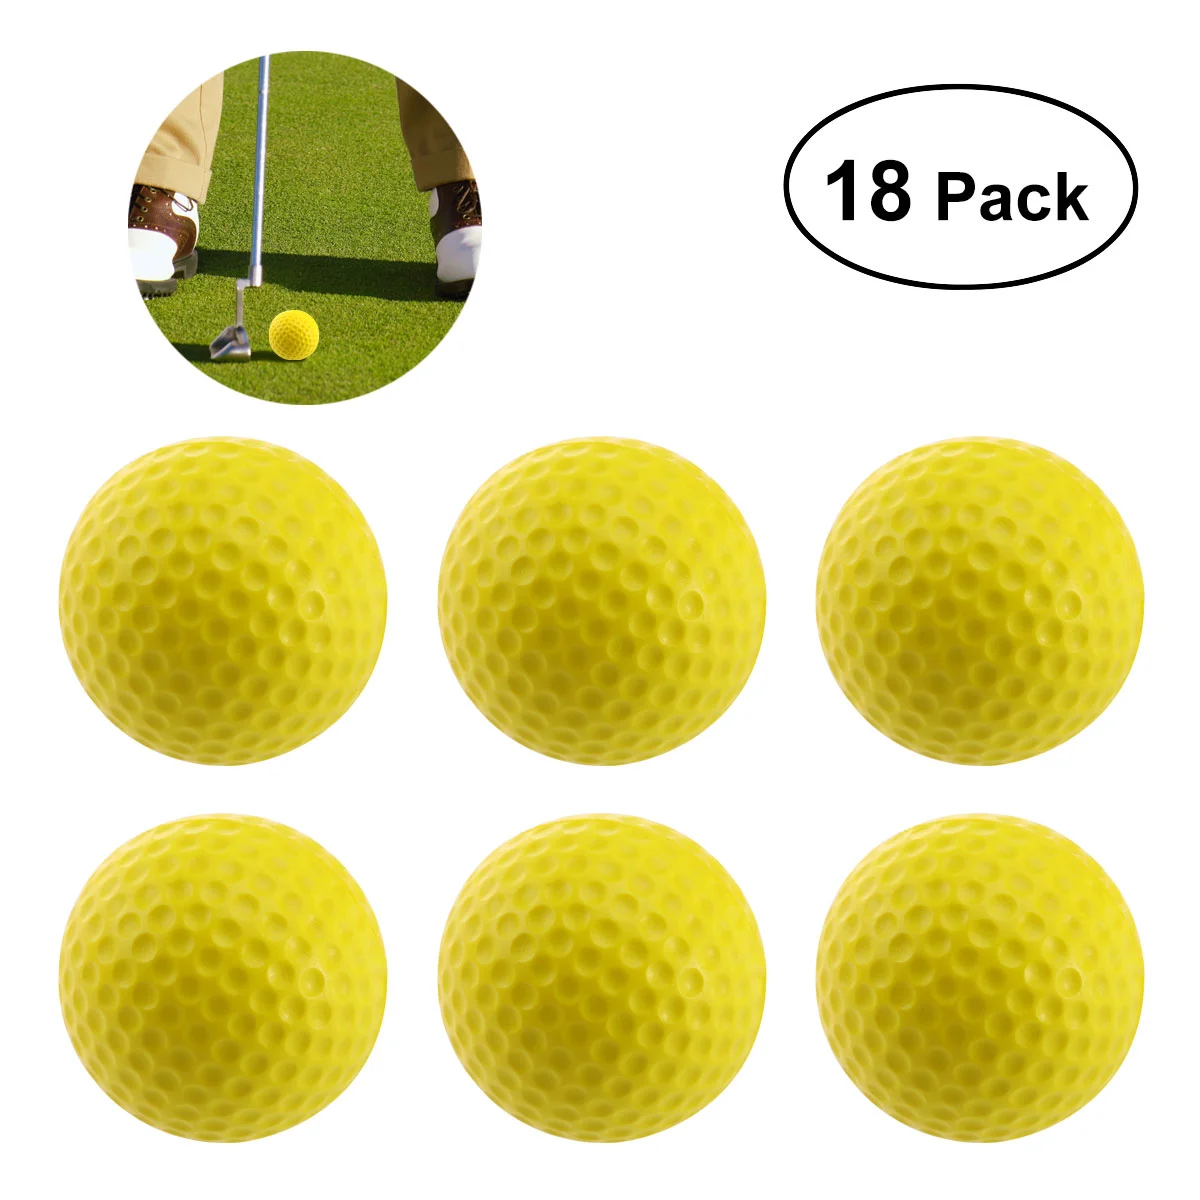 

Тренировочные мячи для гольфа WINOMO, мягкие рифленые эластичные мягкие мячи для гольфа из пенопласта (желтые)